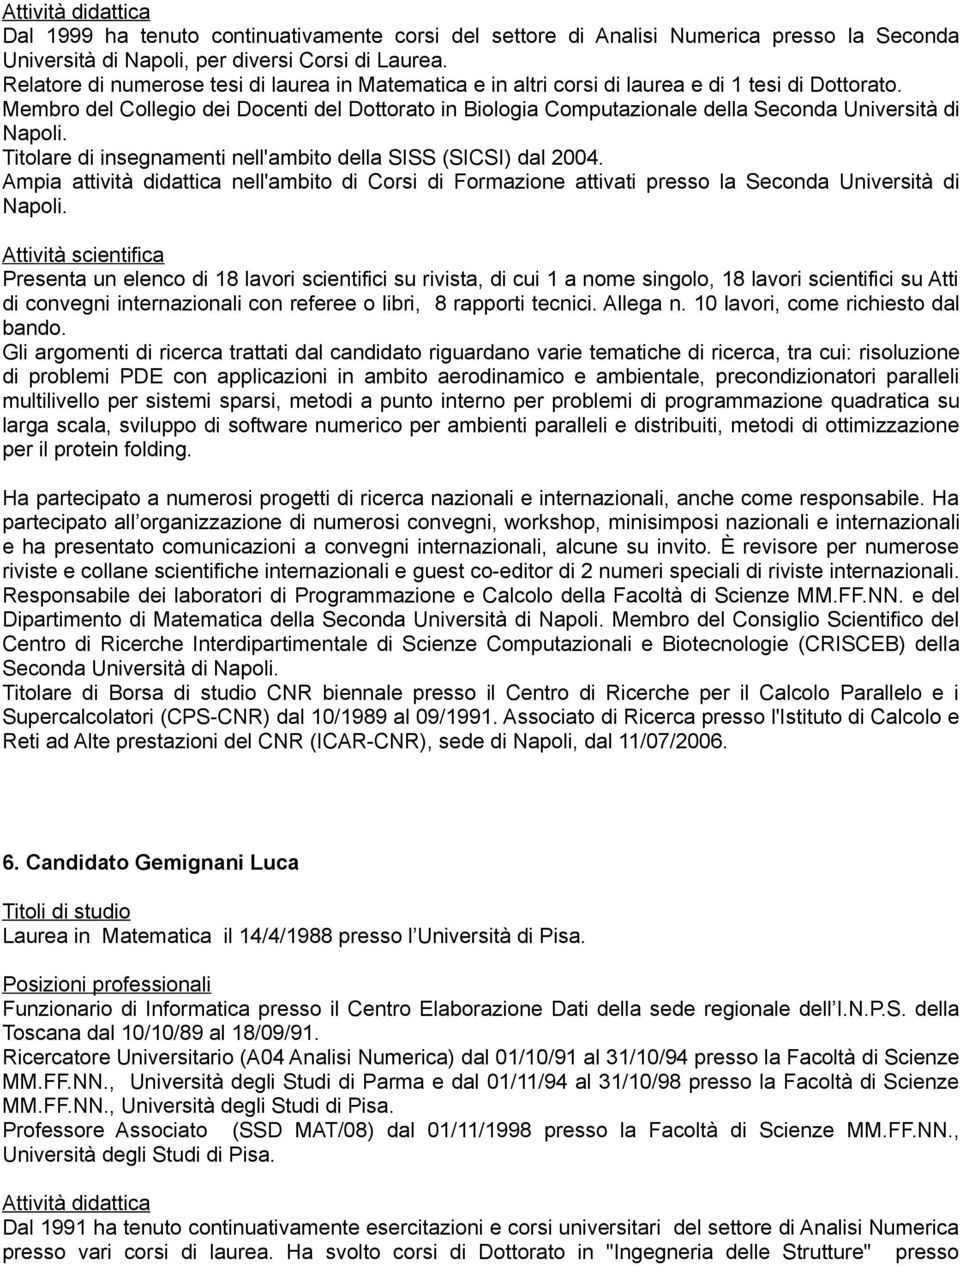 Membro del Collegio dei Docenti del Dottorato in Biologia Computazionale della Seconda Università di Napoli. Titolare di insegnamenti nell'ambito della SISS (SICSI) dal 2004.